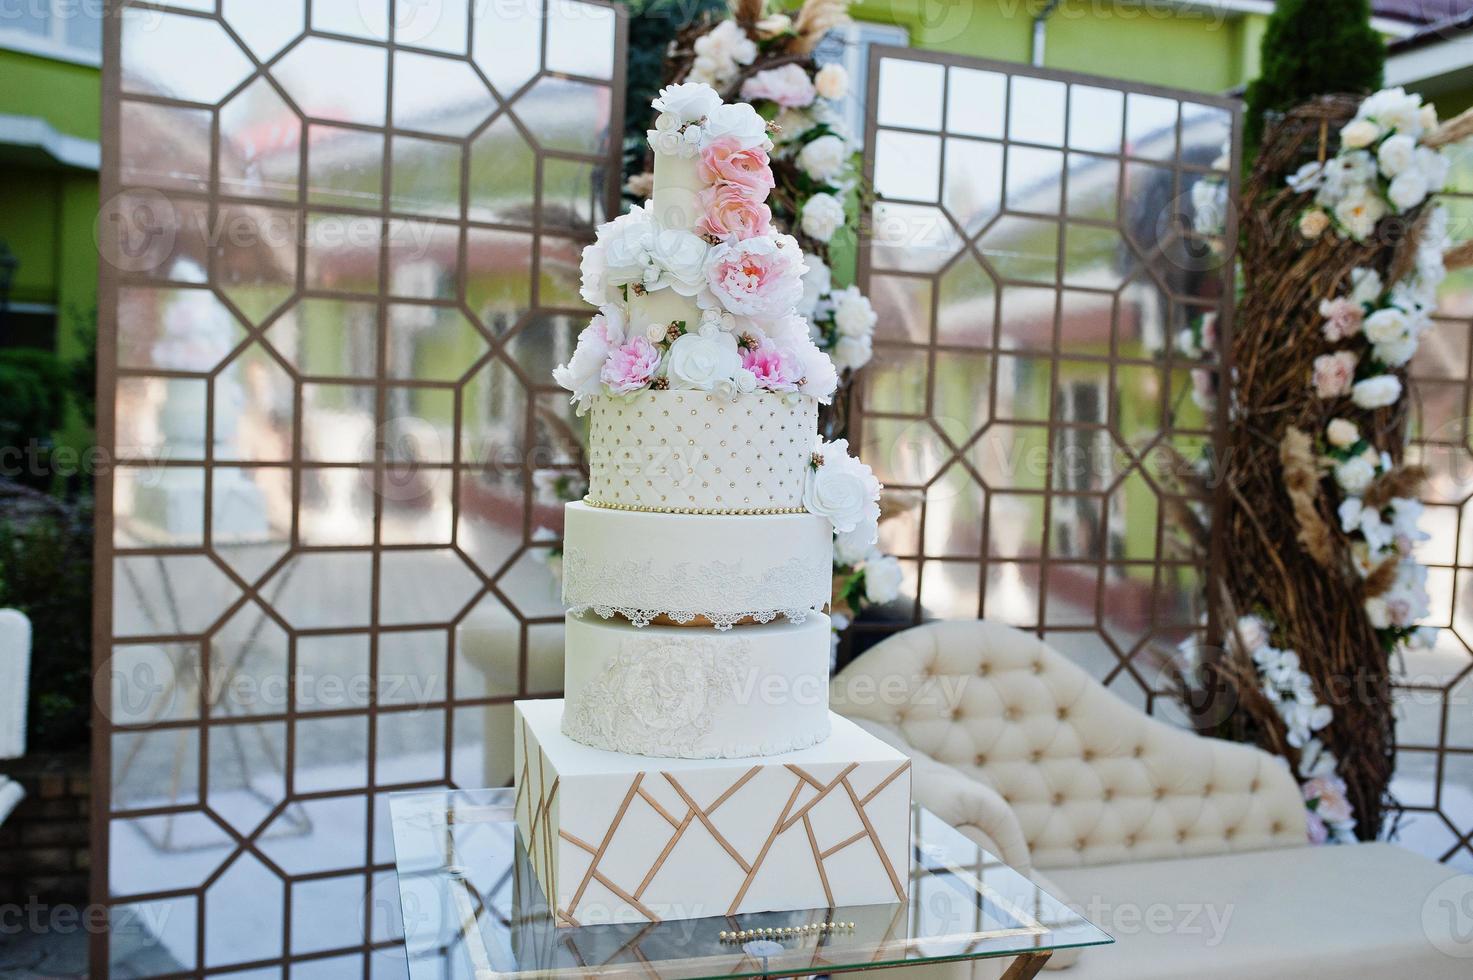 grand gâteau de mariage incroyable avec des fleurs. photo